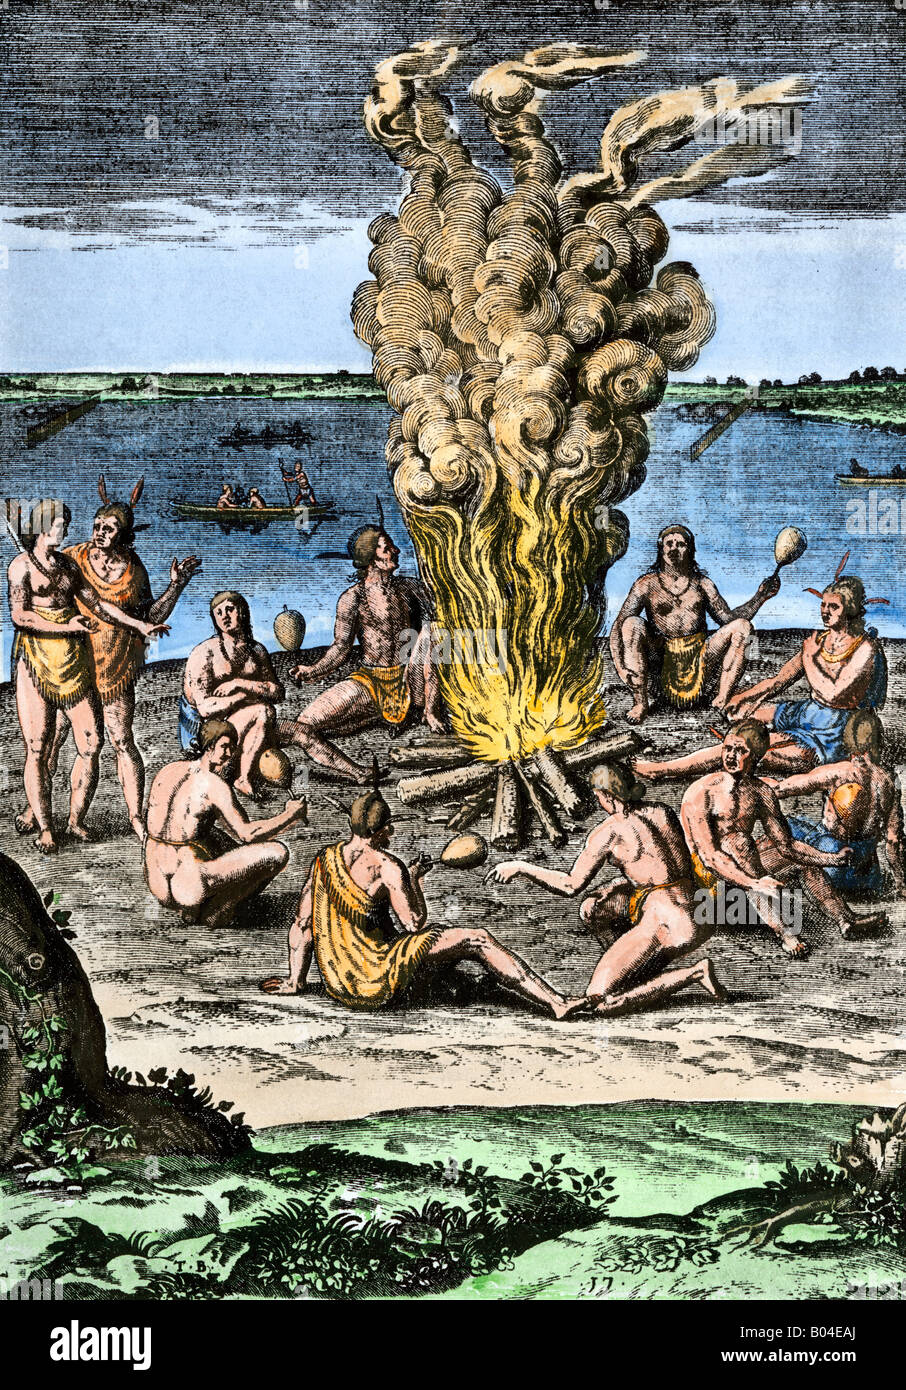 Les Américains indigènes autour d'un feu sur la côte de la Caroline du Nord Virginie 1500s. À la main, gravure sur bois Banque D'Images